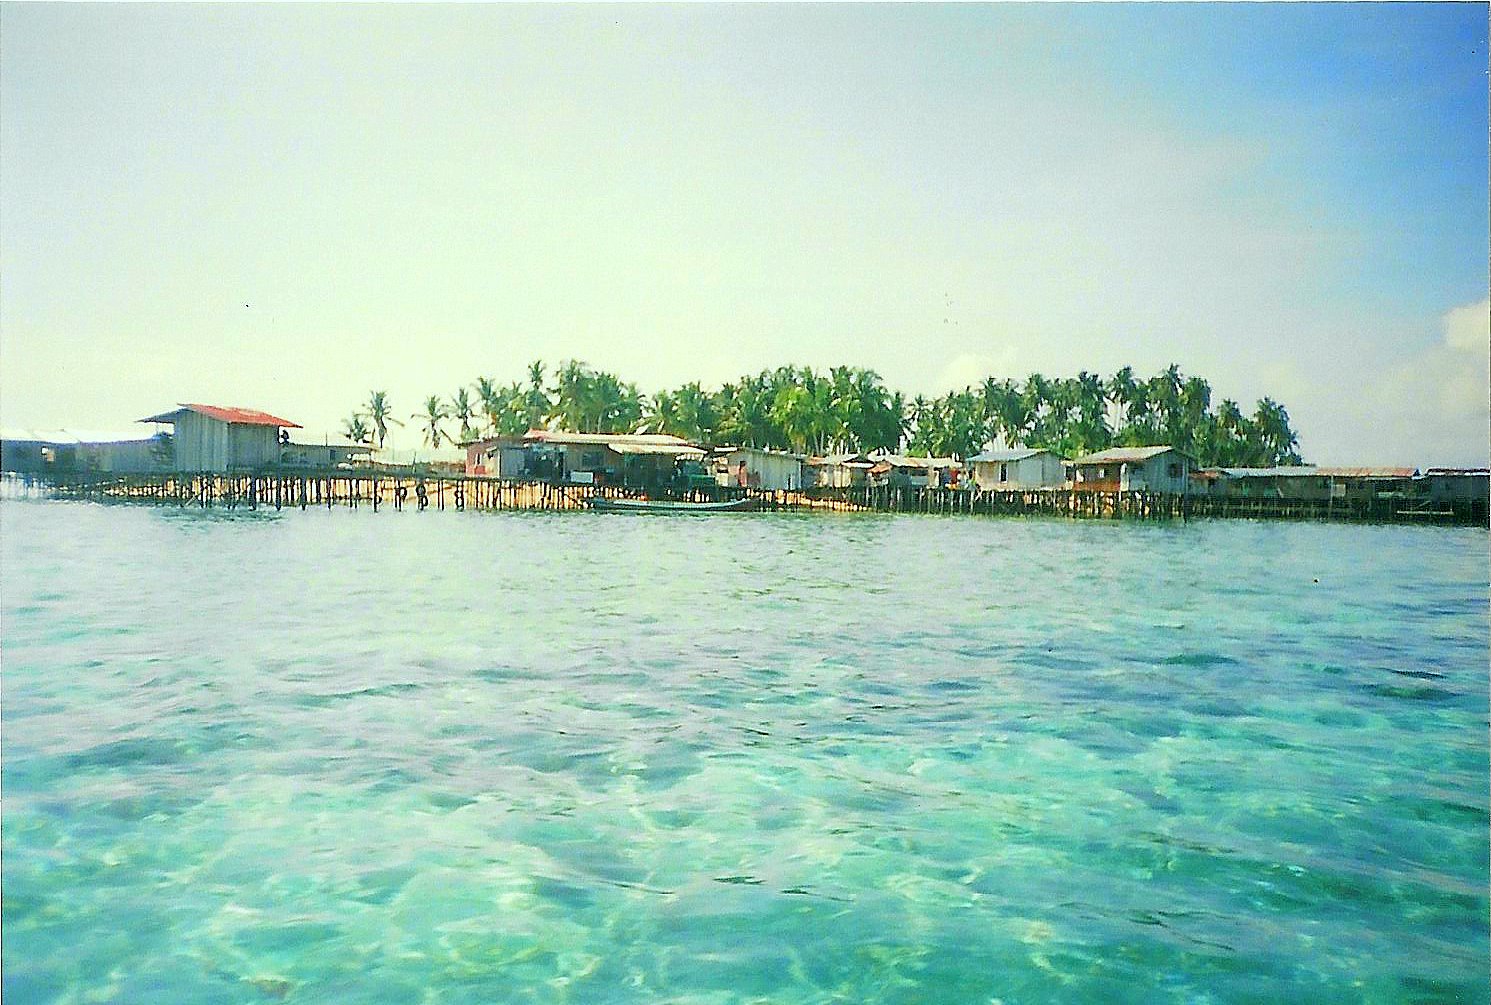 Mabul Island, off the coast of Sabah, Borneo, Malaysia